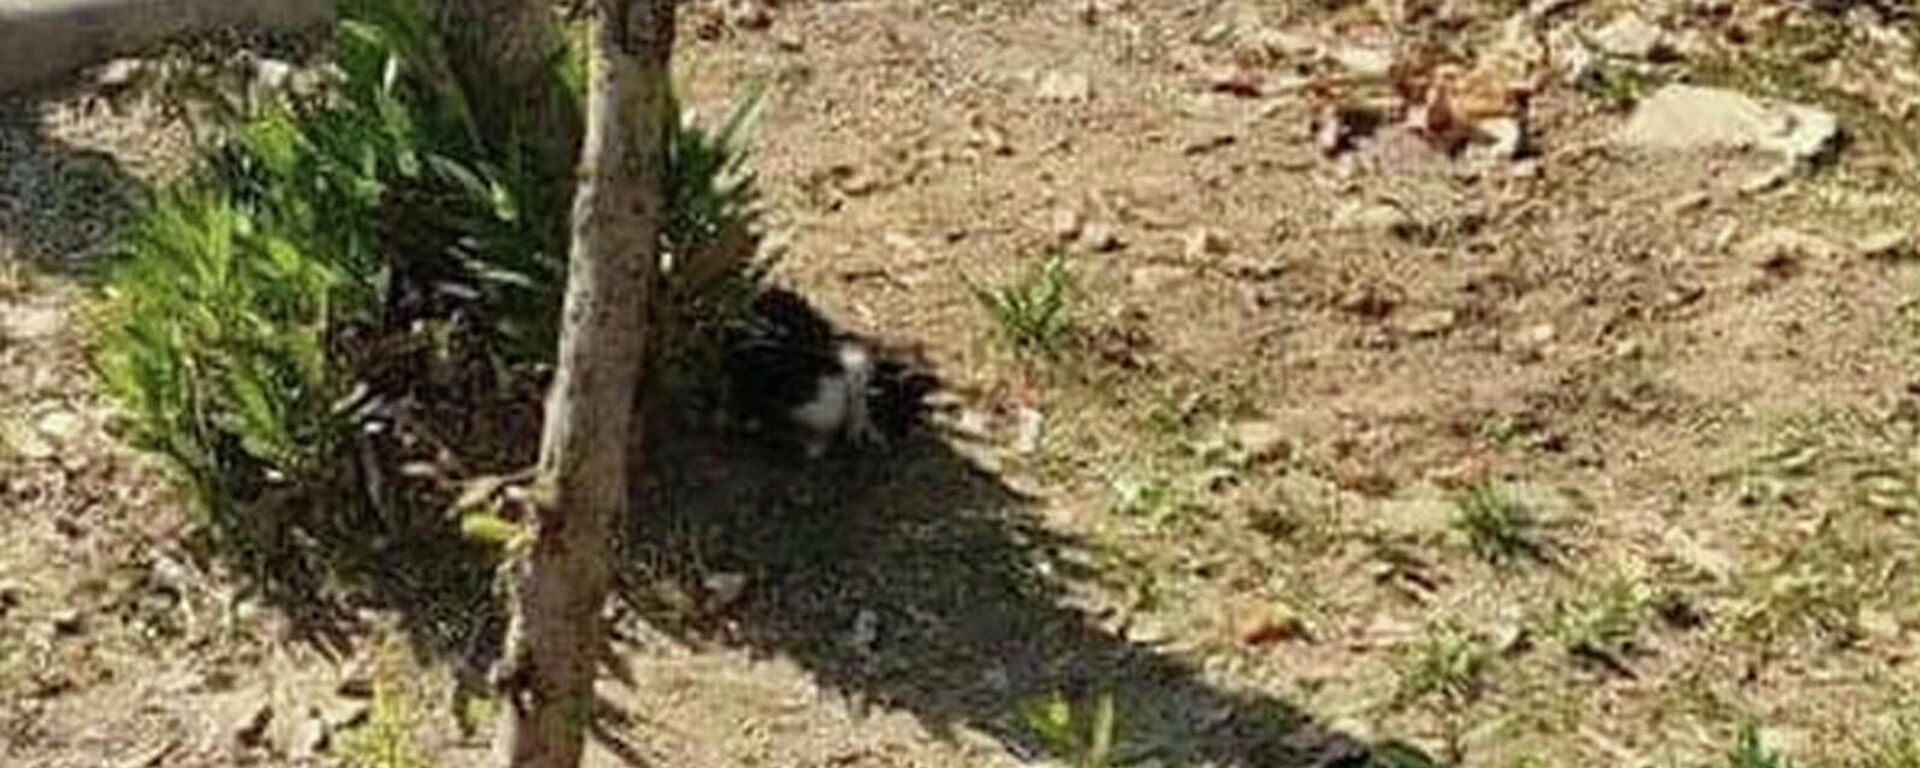 Manisa'nın Turgutlu ilçesinde, ayakları kesilen 2 kedi ölü bulundu. Sosyal medyada paylaşılan görüntüler üzerine polis, olayı gerçekleştiren kişi ya da kişilerin yakalanması için inceleme başlattı. - Sputnik Türkiye, 1920, 30.10.2021